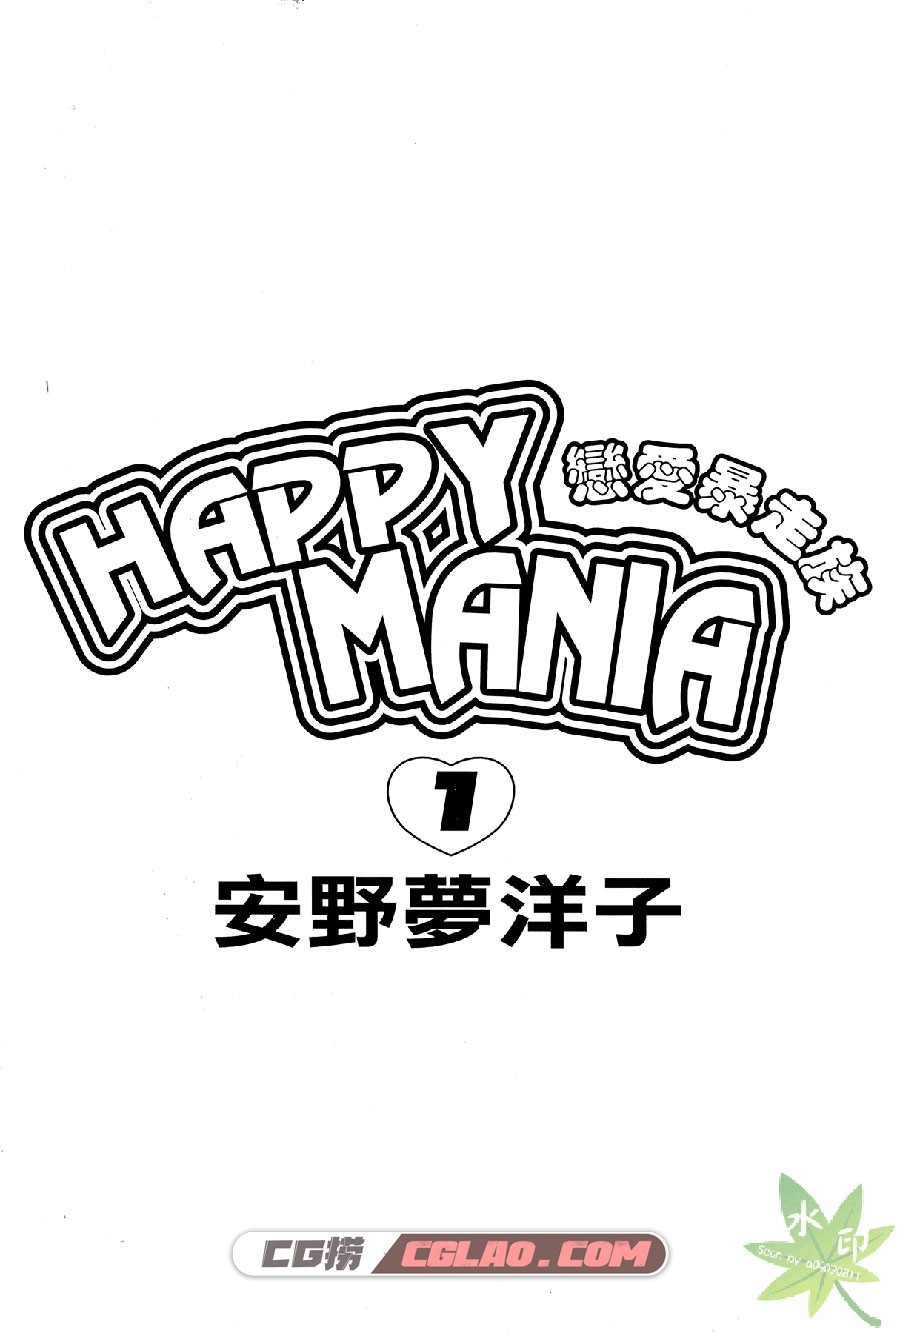 恋爱暴走族 安野梦洋子 1-11卷  漫画全集下载 百度网盘下载,Happy-Mania_01_010.jpg